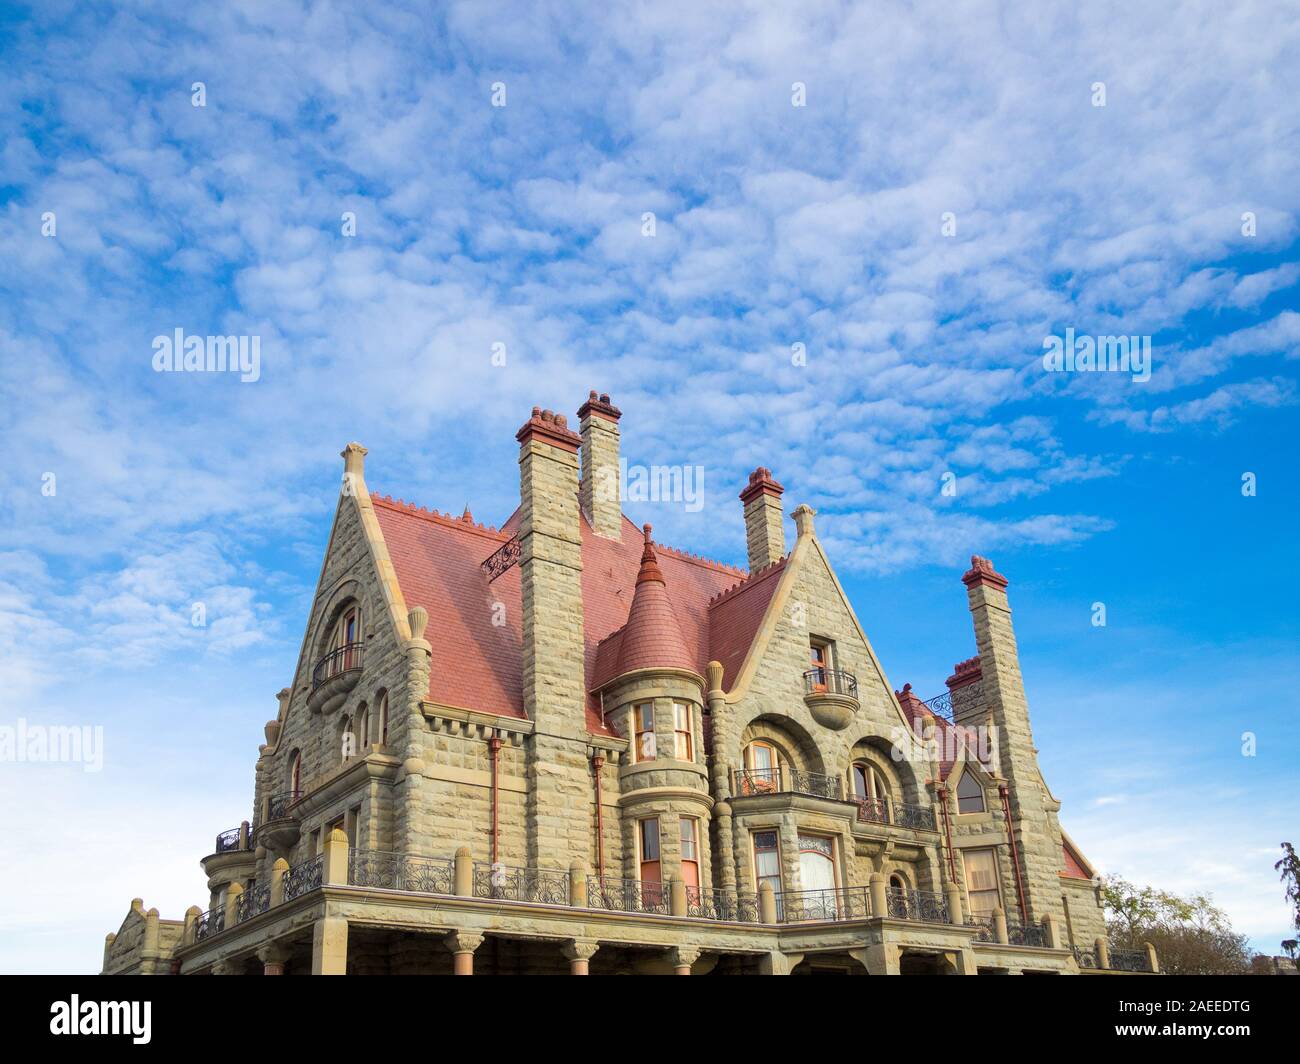 Craigdarroch Castle, a historic, Victorian-era Scottish Baronial mansion in Victoria, British Columbia, Canada, Stock Photo